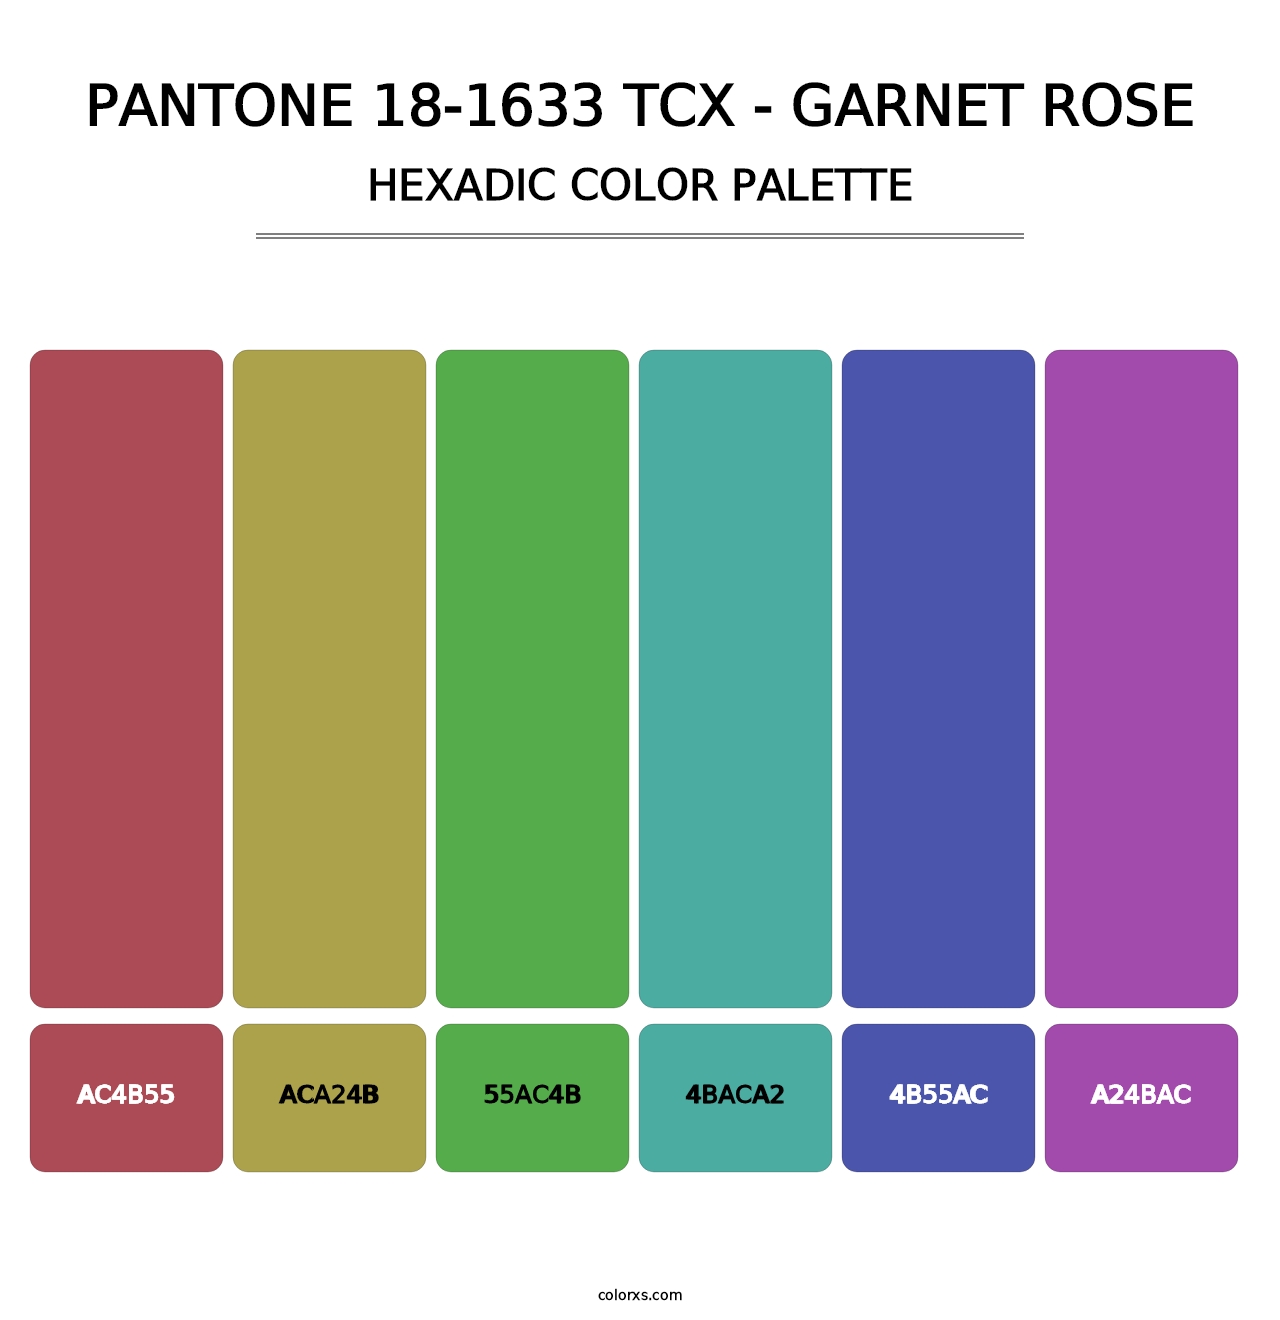 PANTONE 18-1633 TCX - Garnet Rose - Hexadic Color Palette